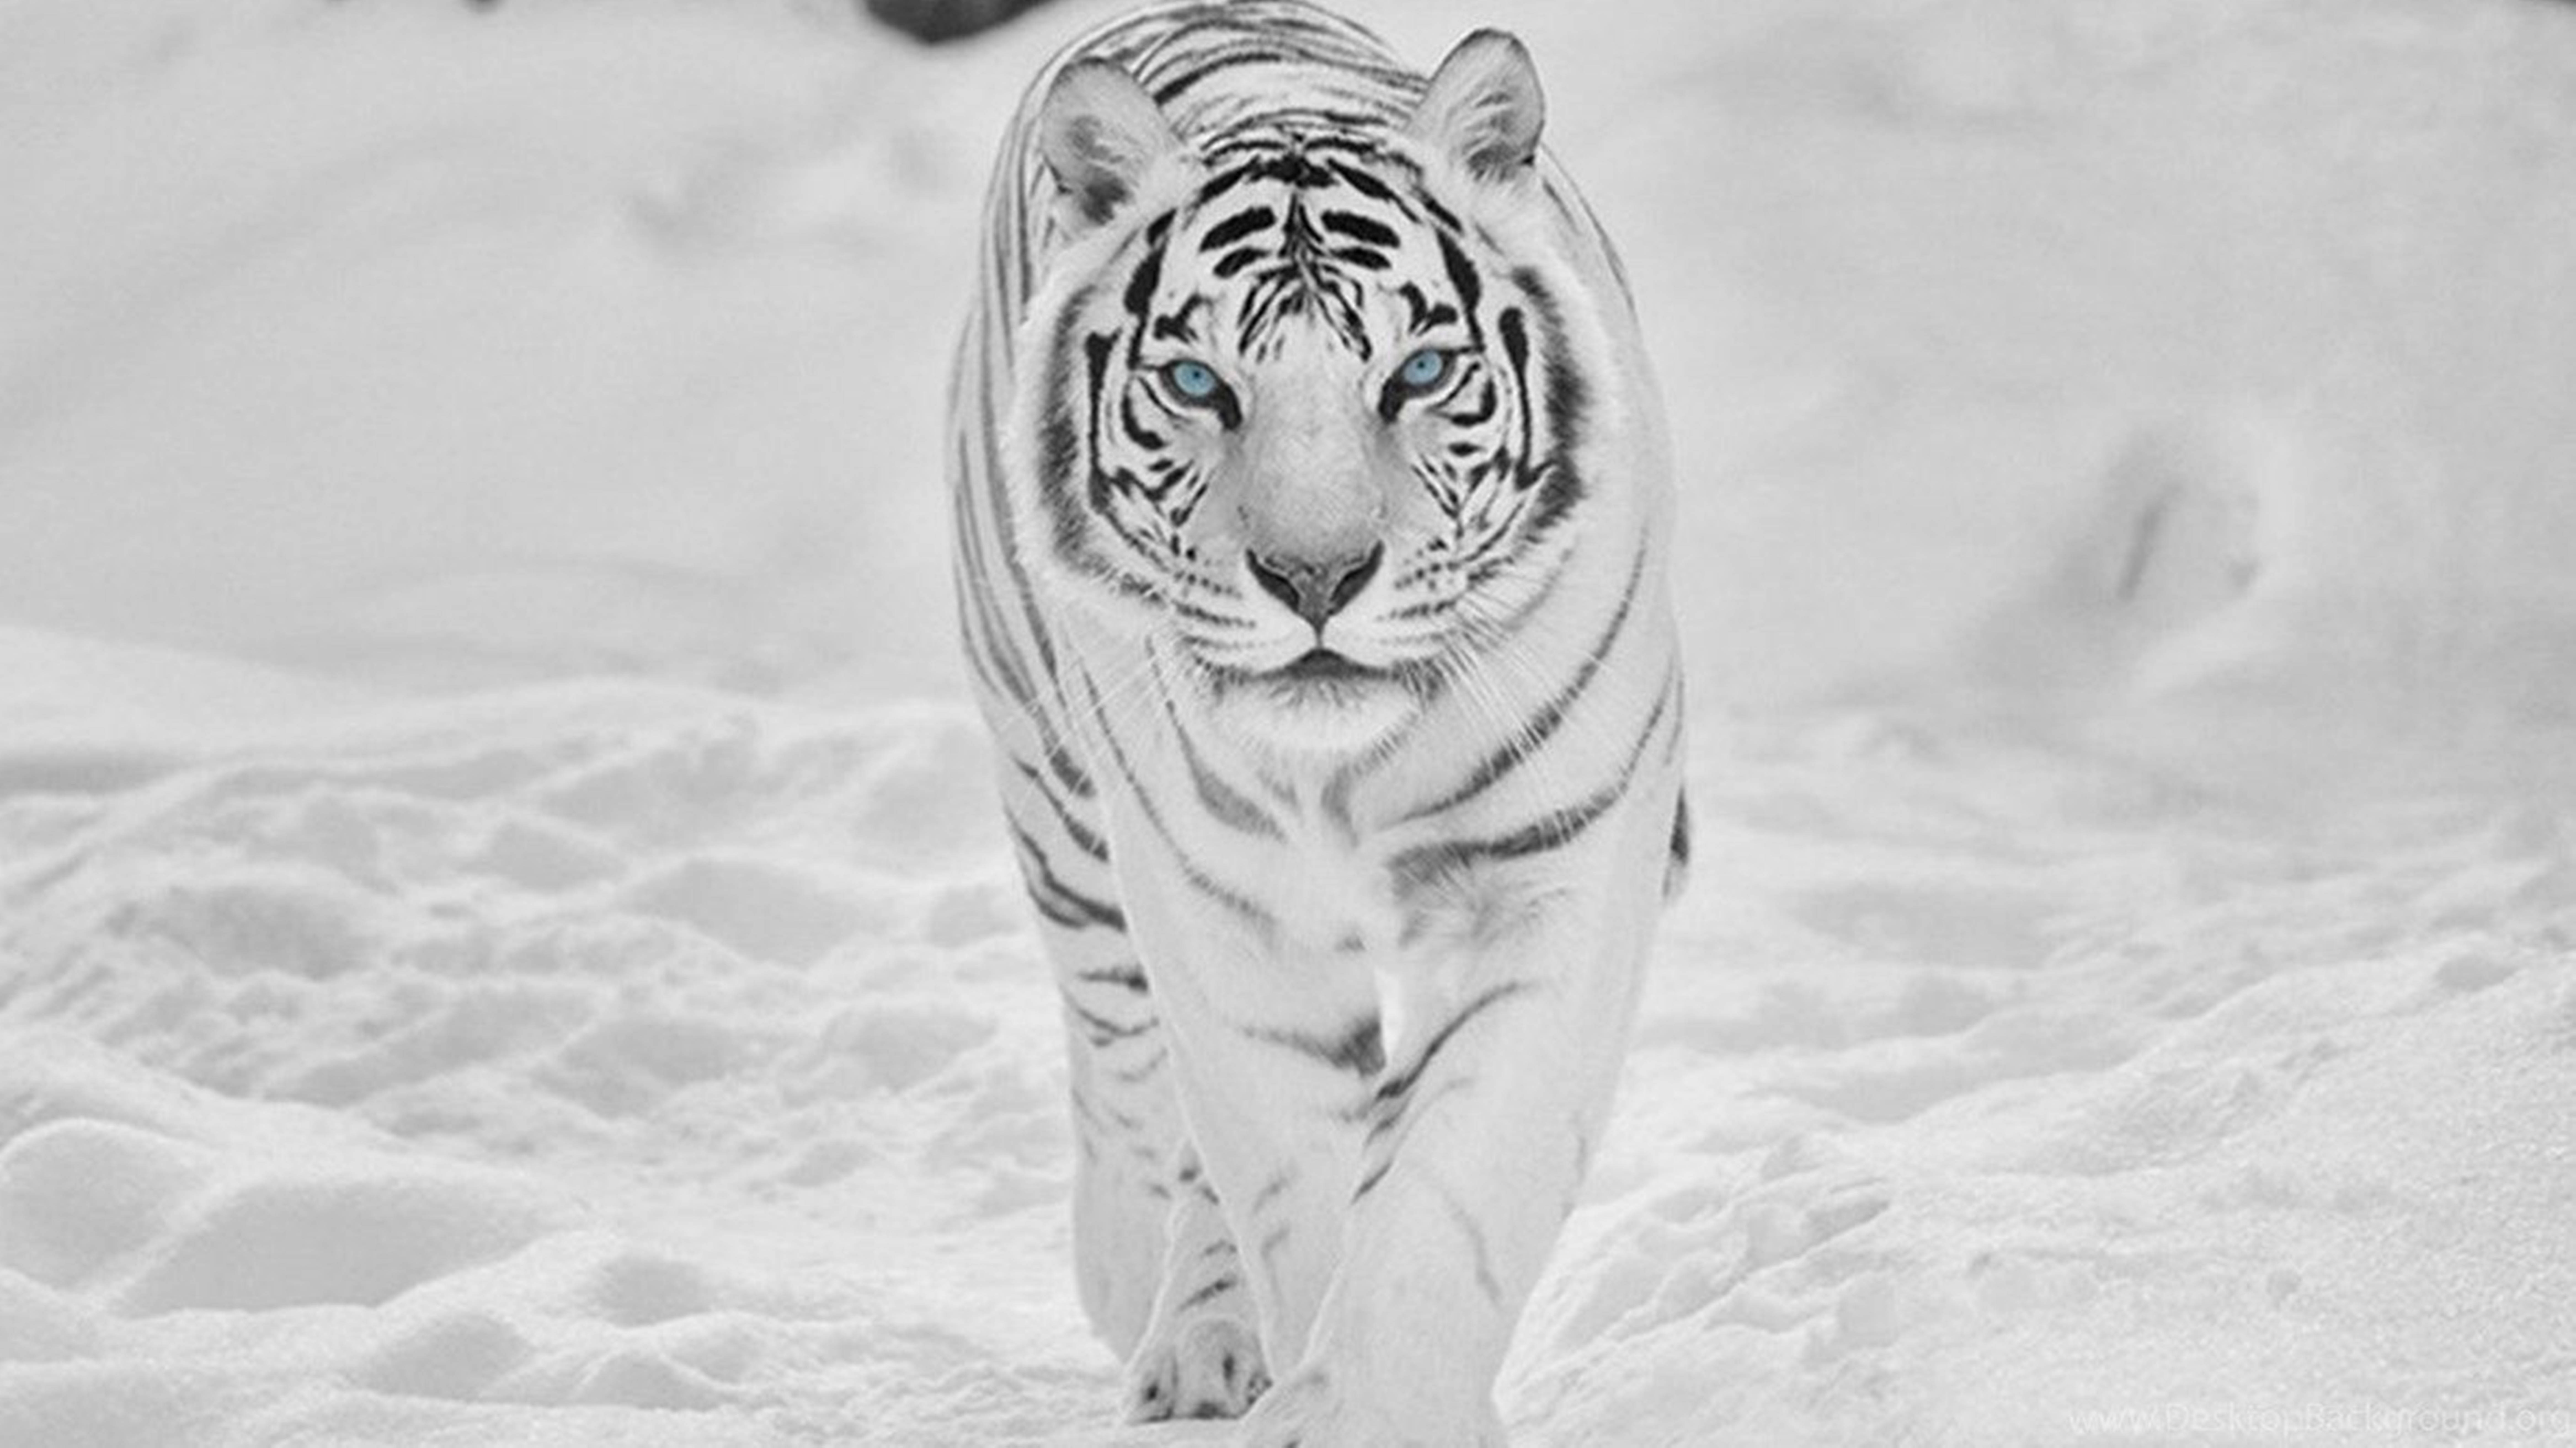 8k Tiger Uhd In Snow Wallpaper